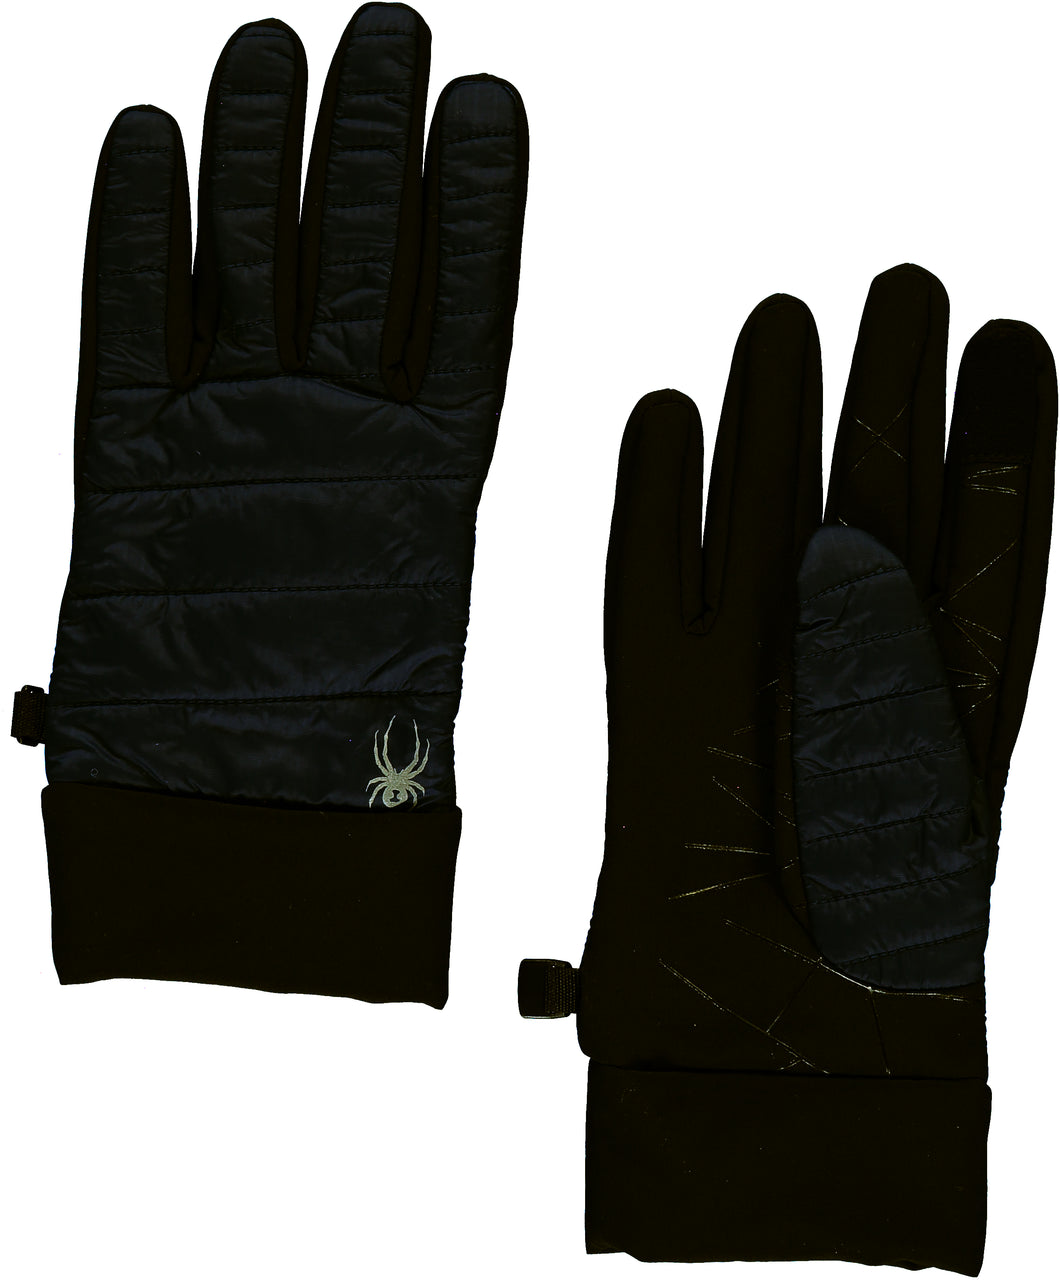 'Spyder' Women's Glissade Hybrid 60GR Insulated Gloves - Black